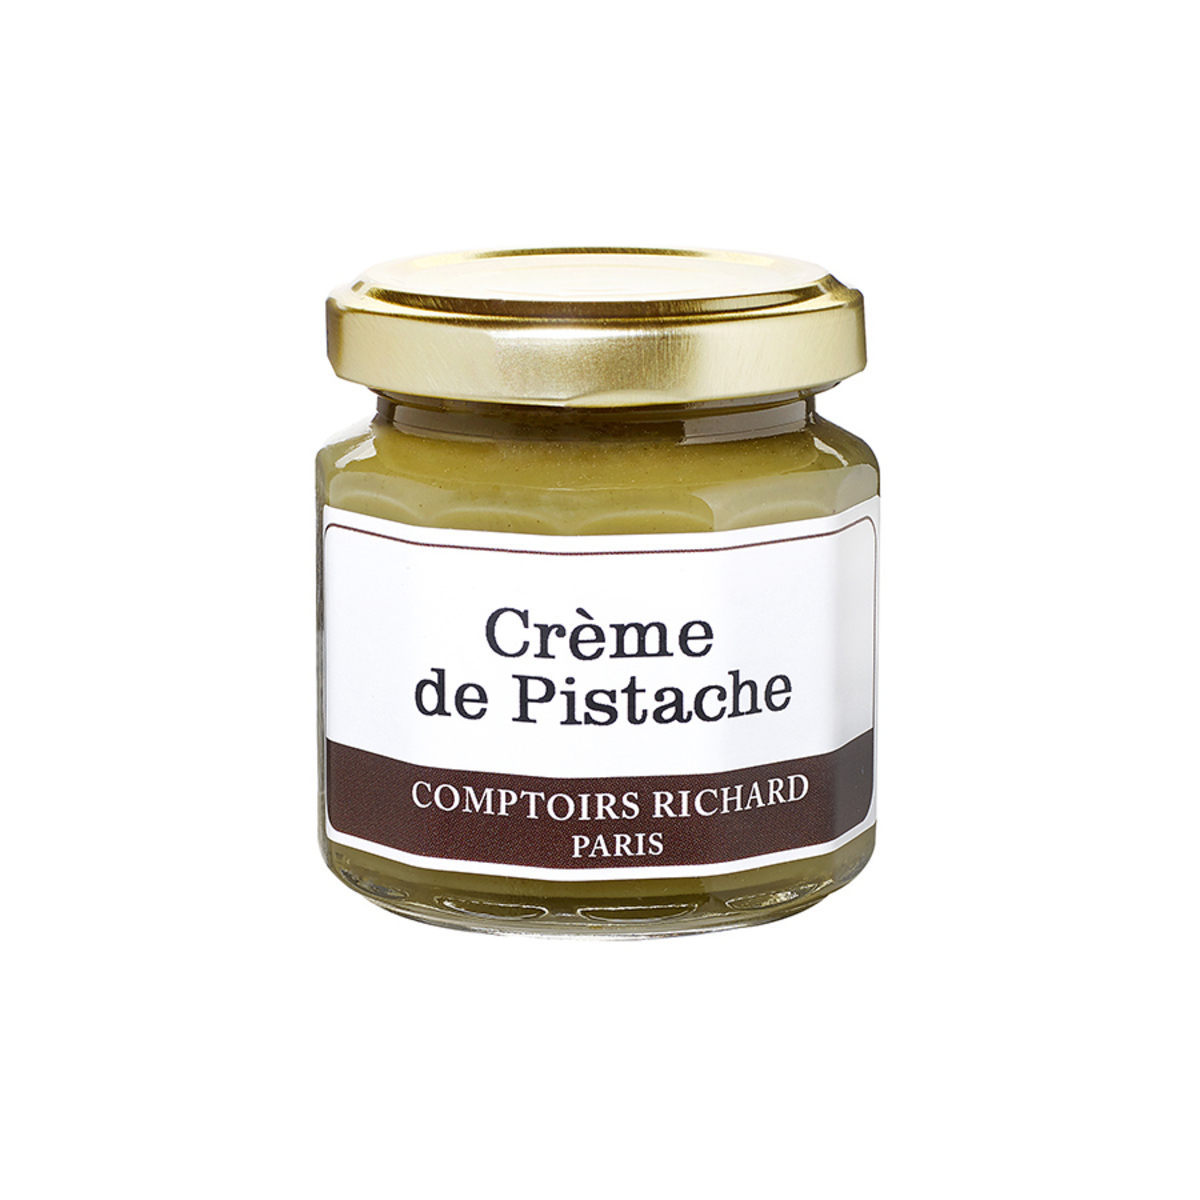 Crème de pistache 120g